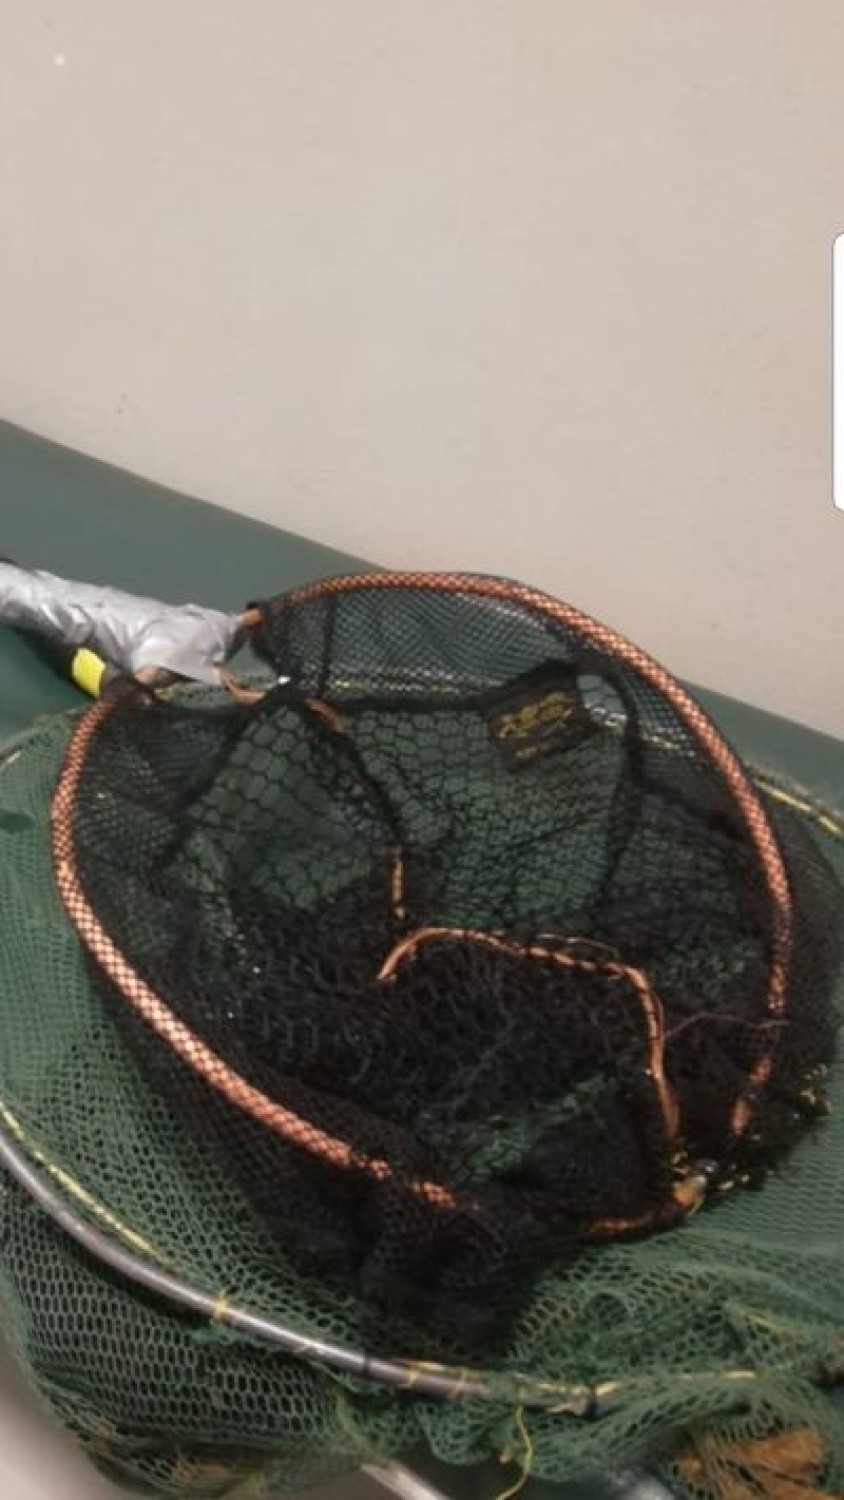 Łowili ryby za pomocą podbieraka podłączonego do prądu. Wpadli w ręce policji 